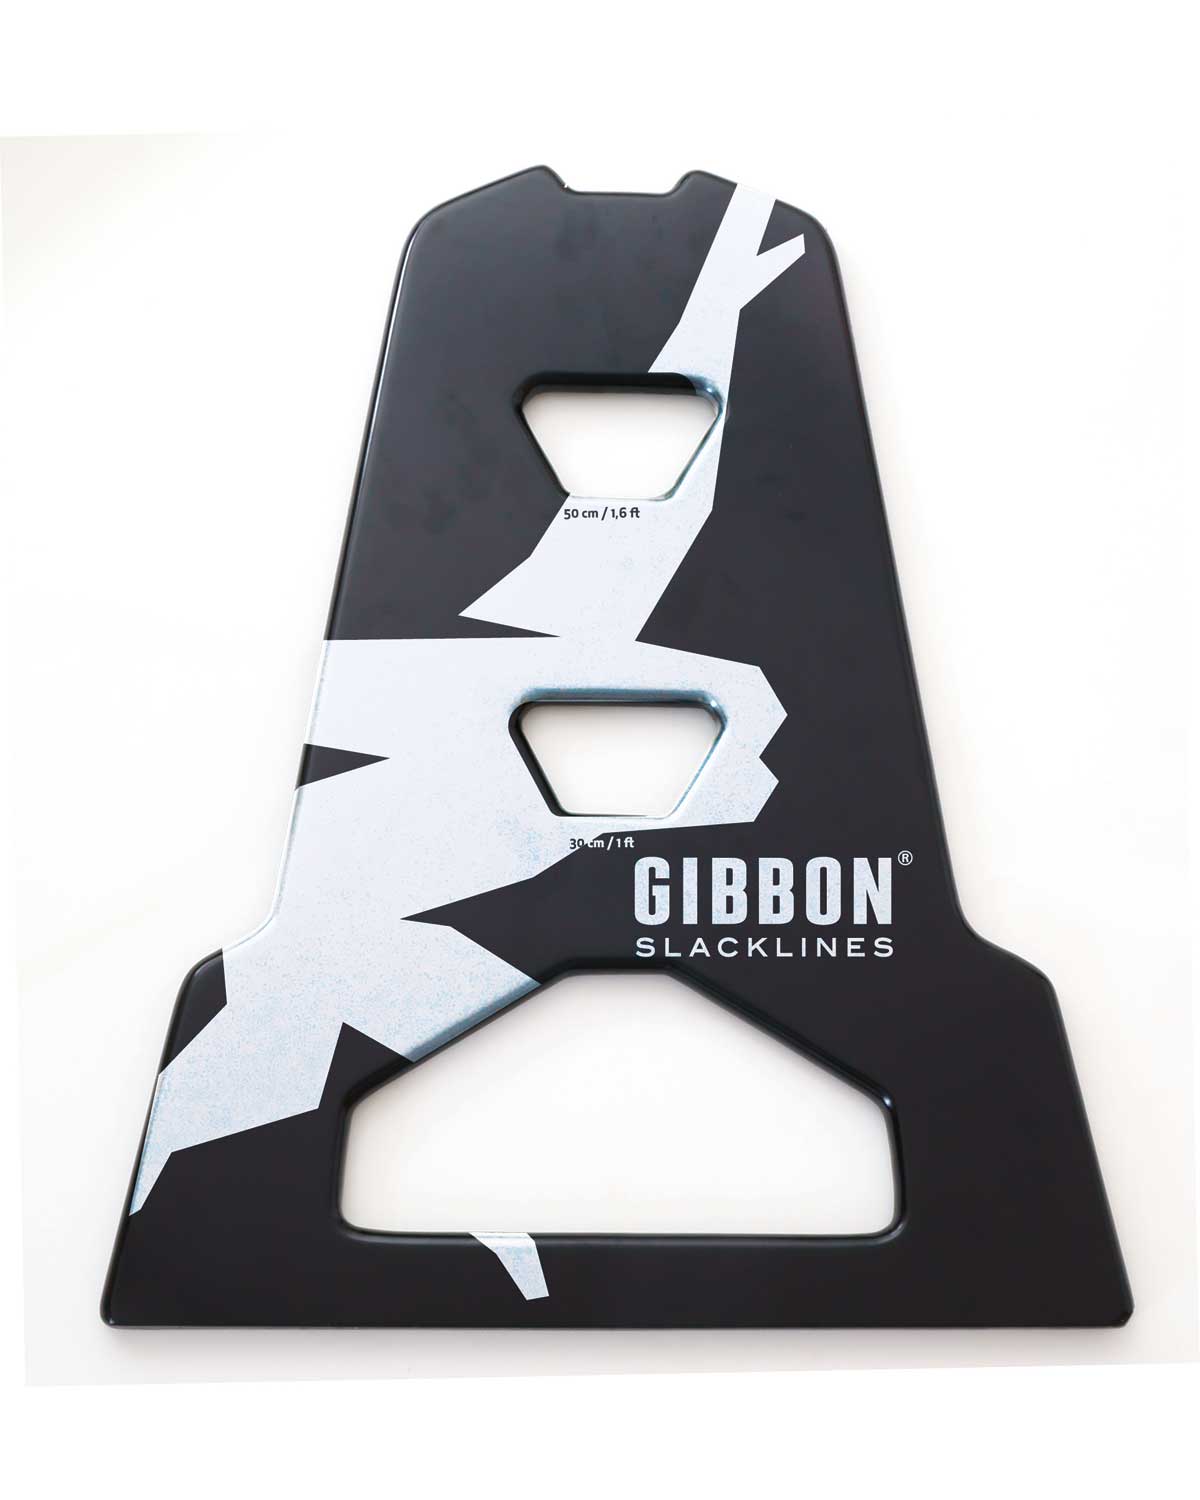 Gibbon-Slackline-independence-kit-no-trees-setup-a-frame-board-for australian-gardens